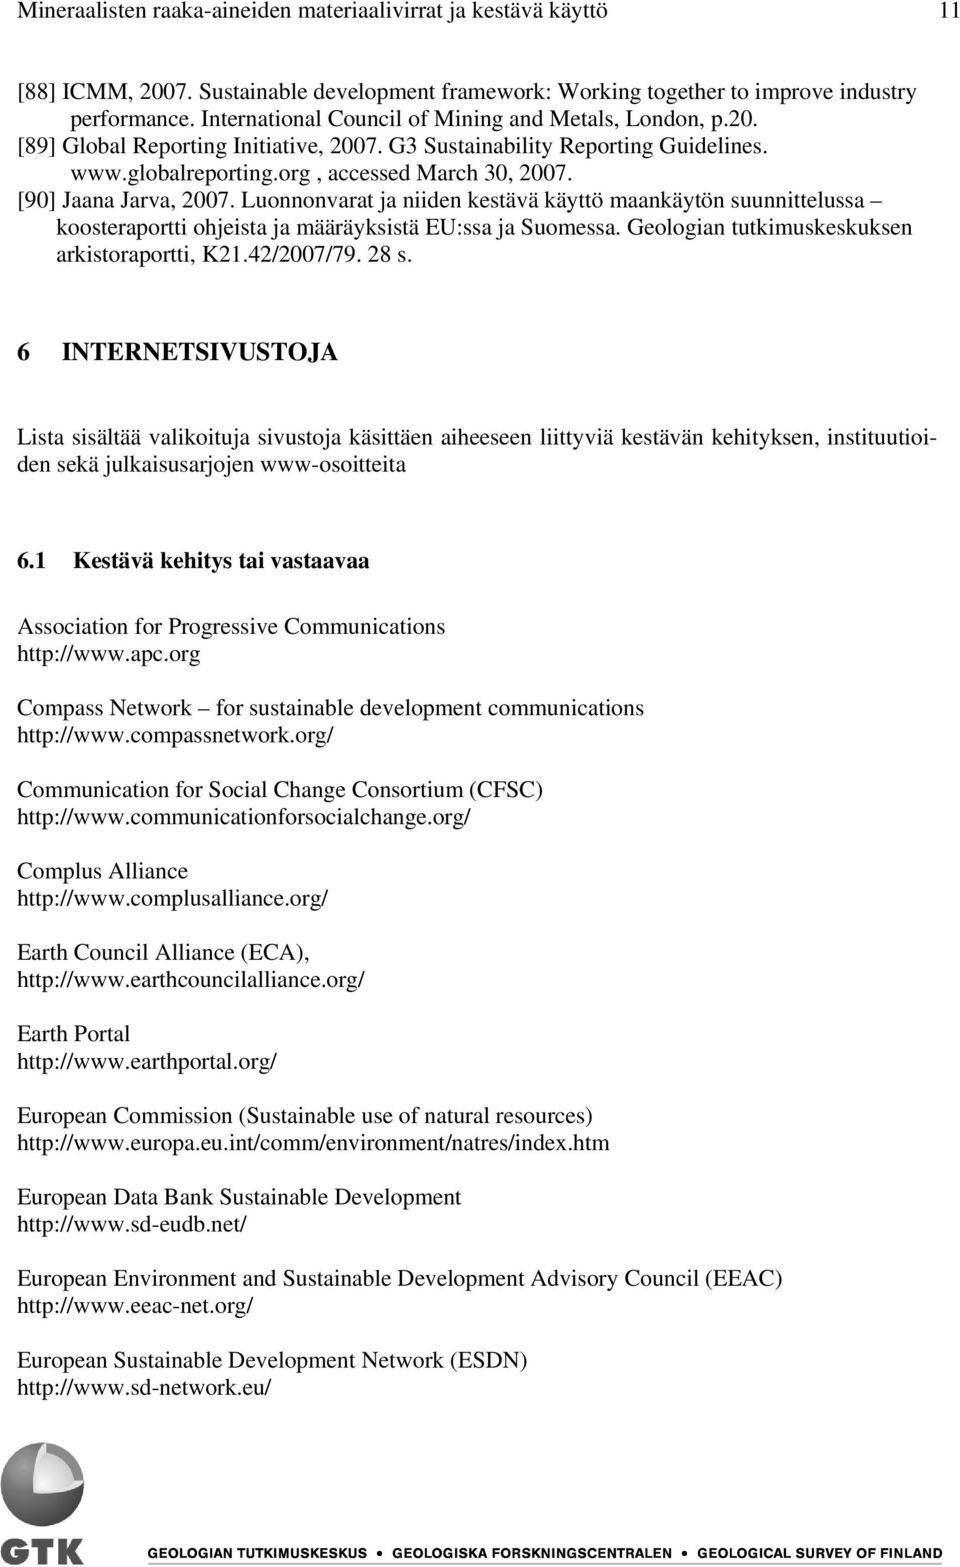 [90] Jaana Jarva, 2007. Luonnonvarat ja niiden kestävä käyttö maankäytön suunnittelussa koosteraportti ohjeista ja määräyksistä EU:ssa ja Suomessa. Geologian tutkimuskeskuksen arkistoraportti, K21.